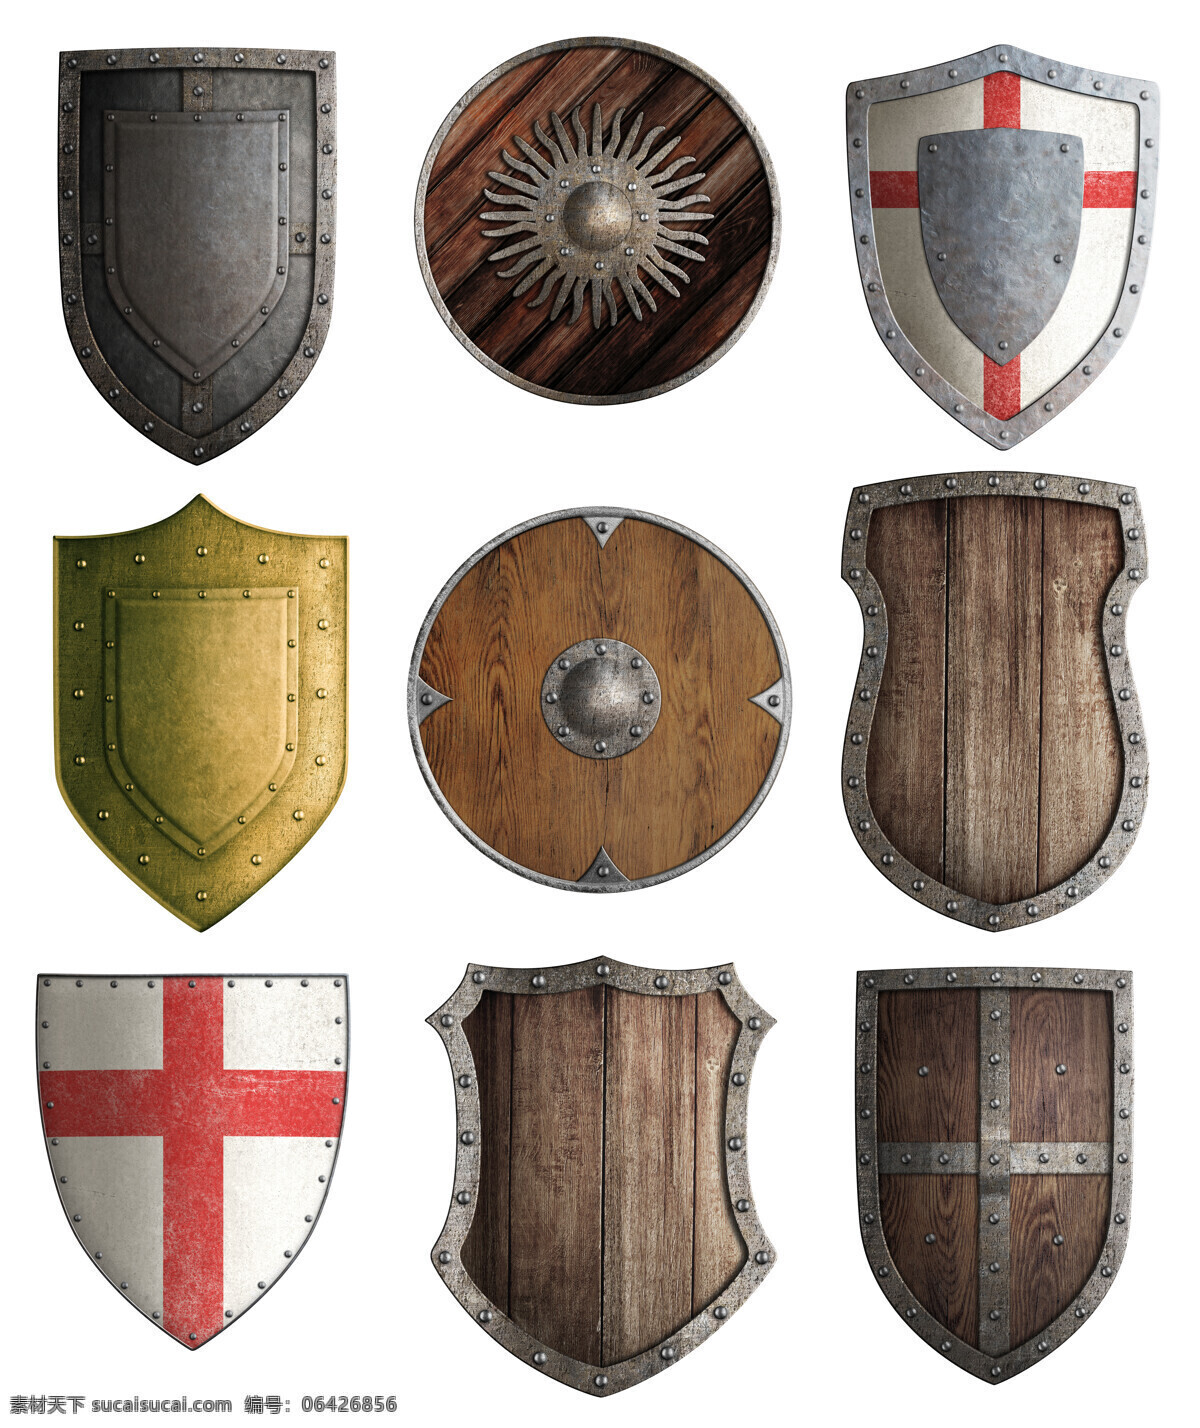 古代 盾牌 古代盾牌 金属盾牌 十字军 金色盾牌 木板盾牌 其他类别 生活百科